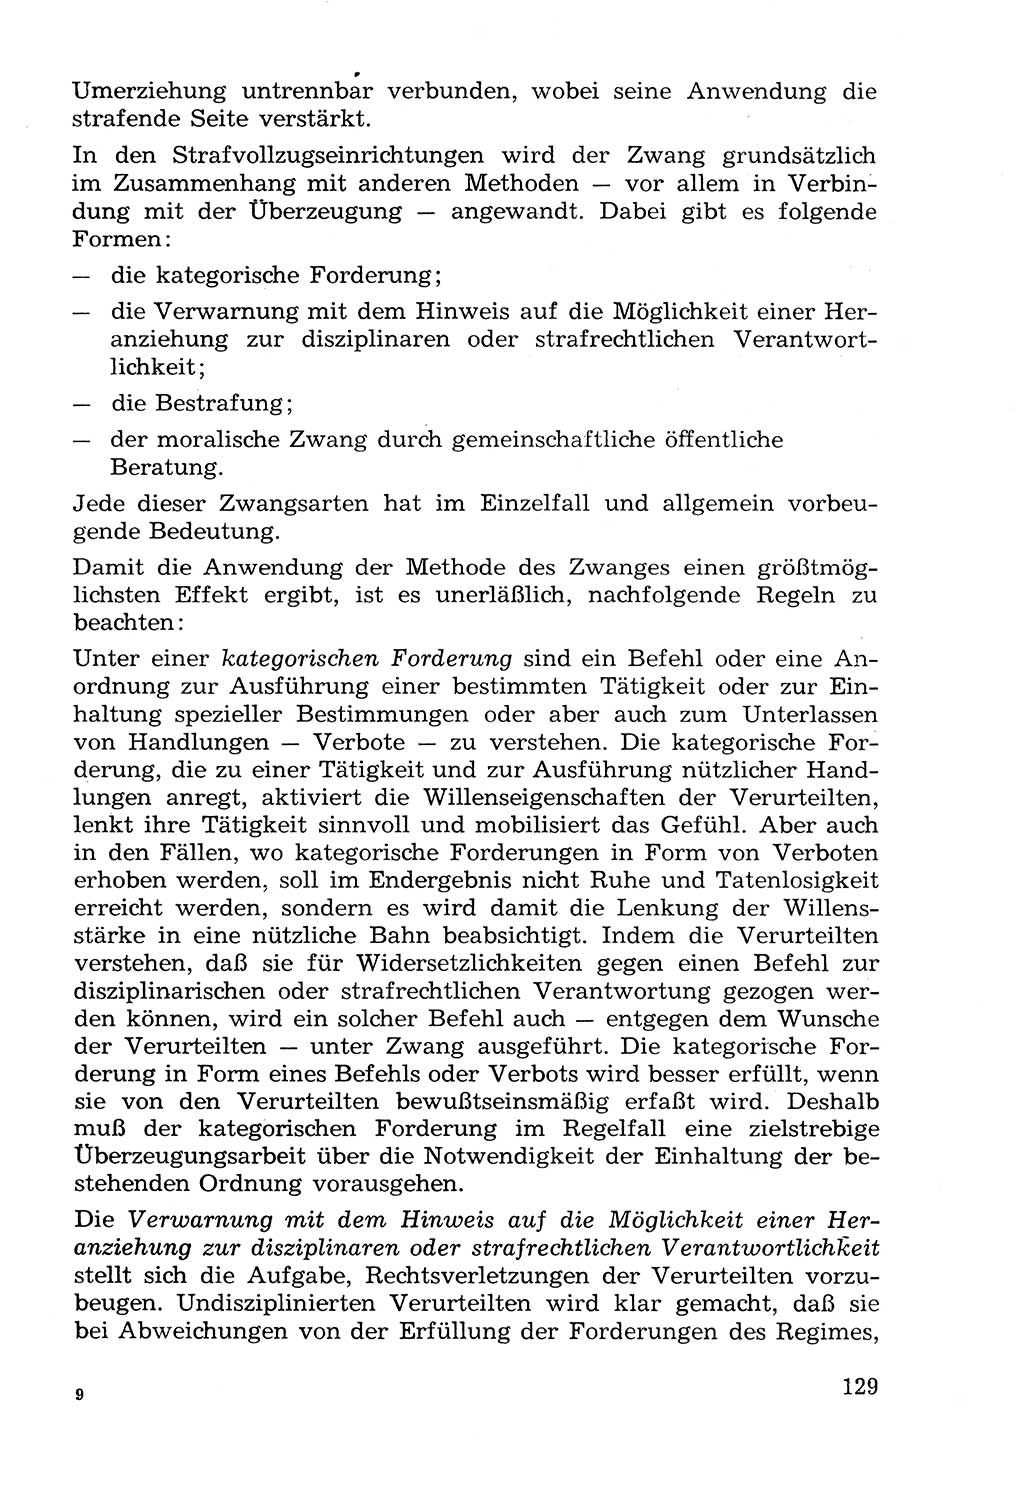 Lehrbuch der Strafvollzugspädagogik [Deutsche Demokratische Republik (DDR)] 1969, Seite 129 (Lb. SV-Pd. DDR 1969, S. 129)